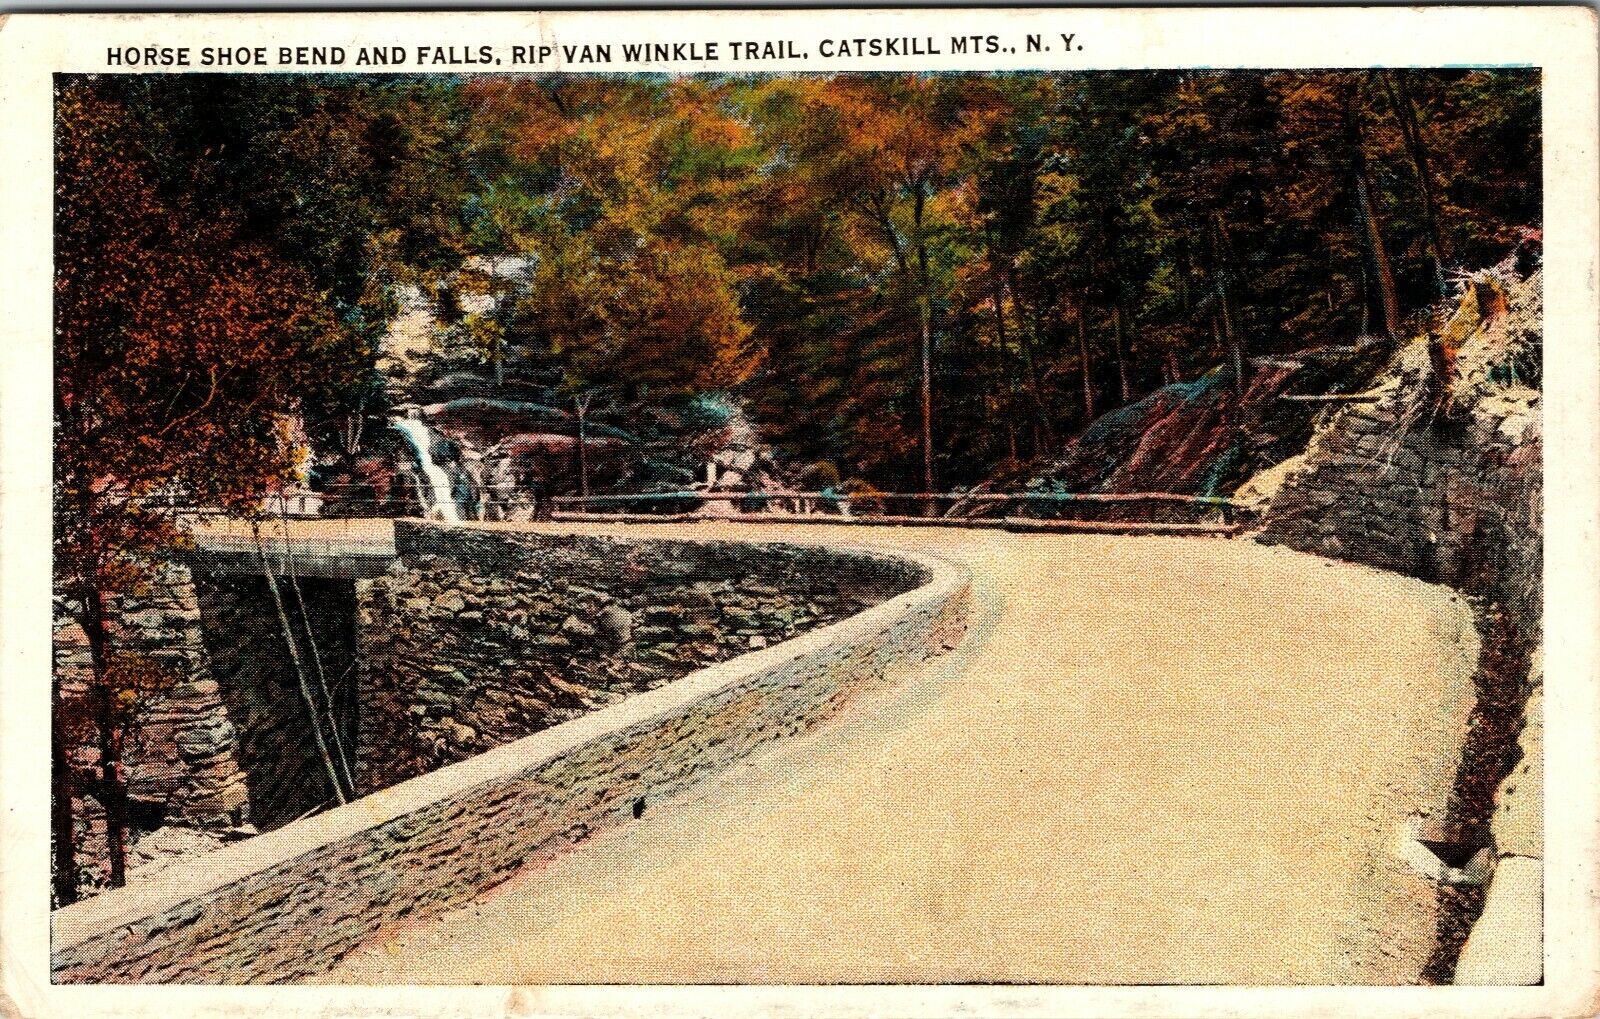 Horse Bend & Falls Rip Van Winkle Trail Catskill Mts. N.Y. 1932 Vintage Postcard